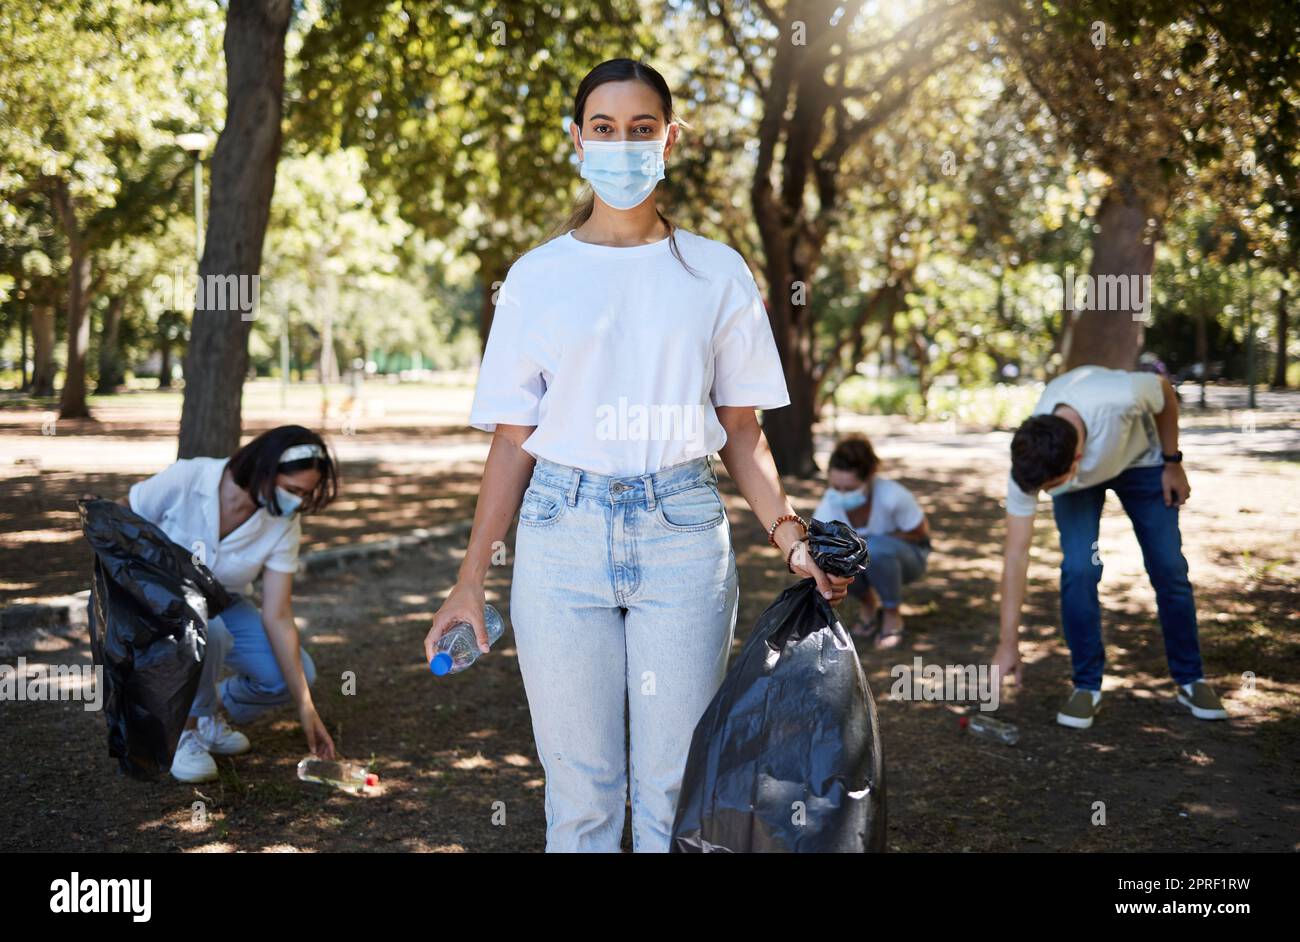 Covid, Gesichtsmaske und ehrenamtlicher Arbeiter, der den Park reinigt, gemeinnützige Arbeit leistet und dabei hilft, Müll und Plastikflaschen zu sammeln. Unterstützen Sie das Recycling-Team der Aktivisten, das gemeinsam an der Beseitigung der Umweltverschmutzung arbeitet Stockfoto